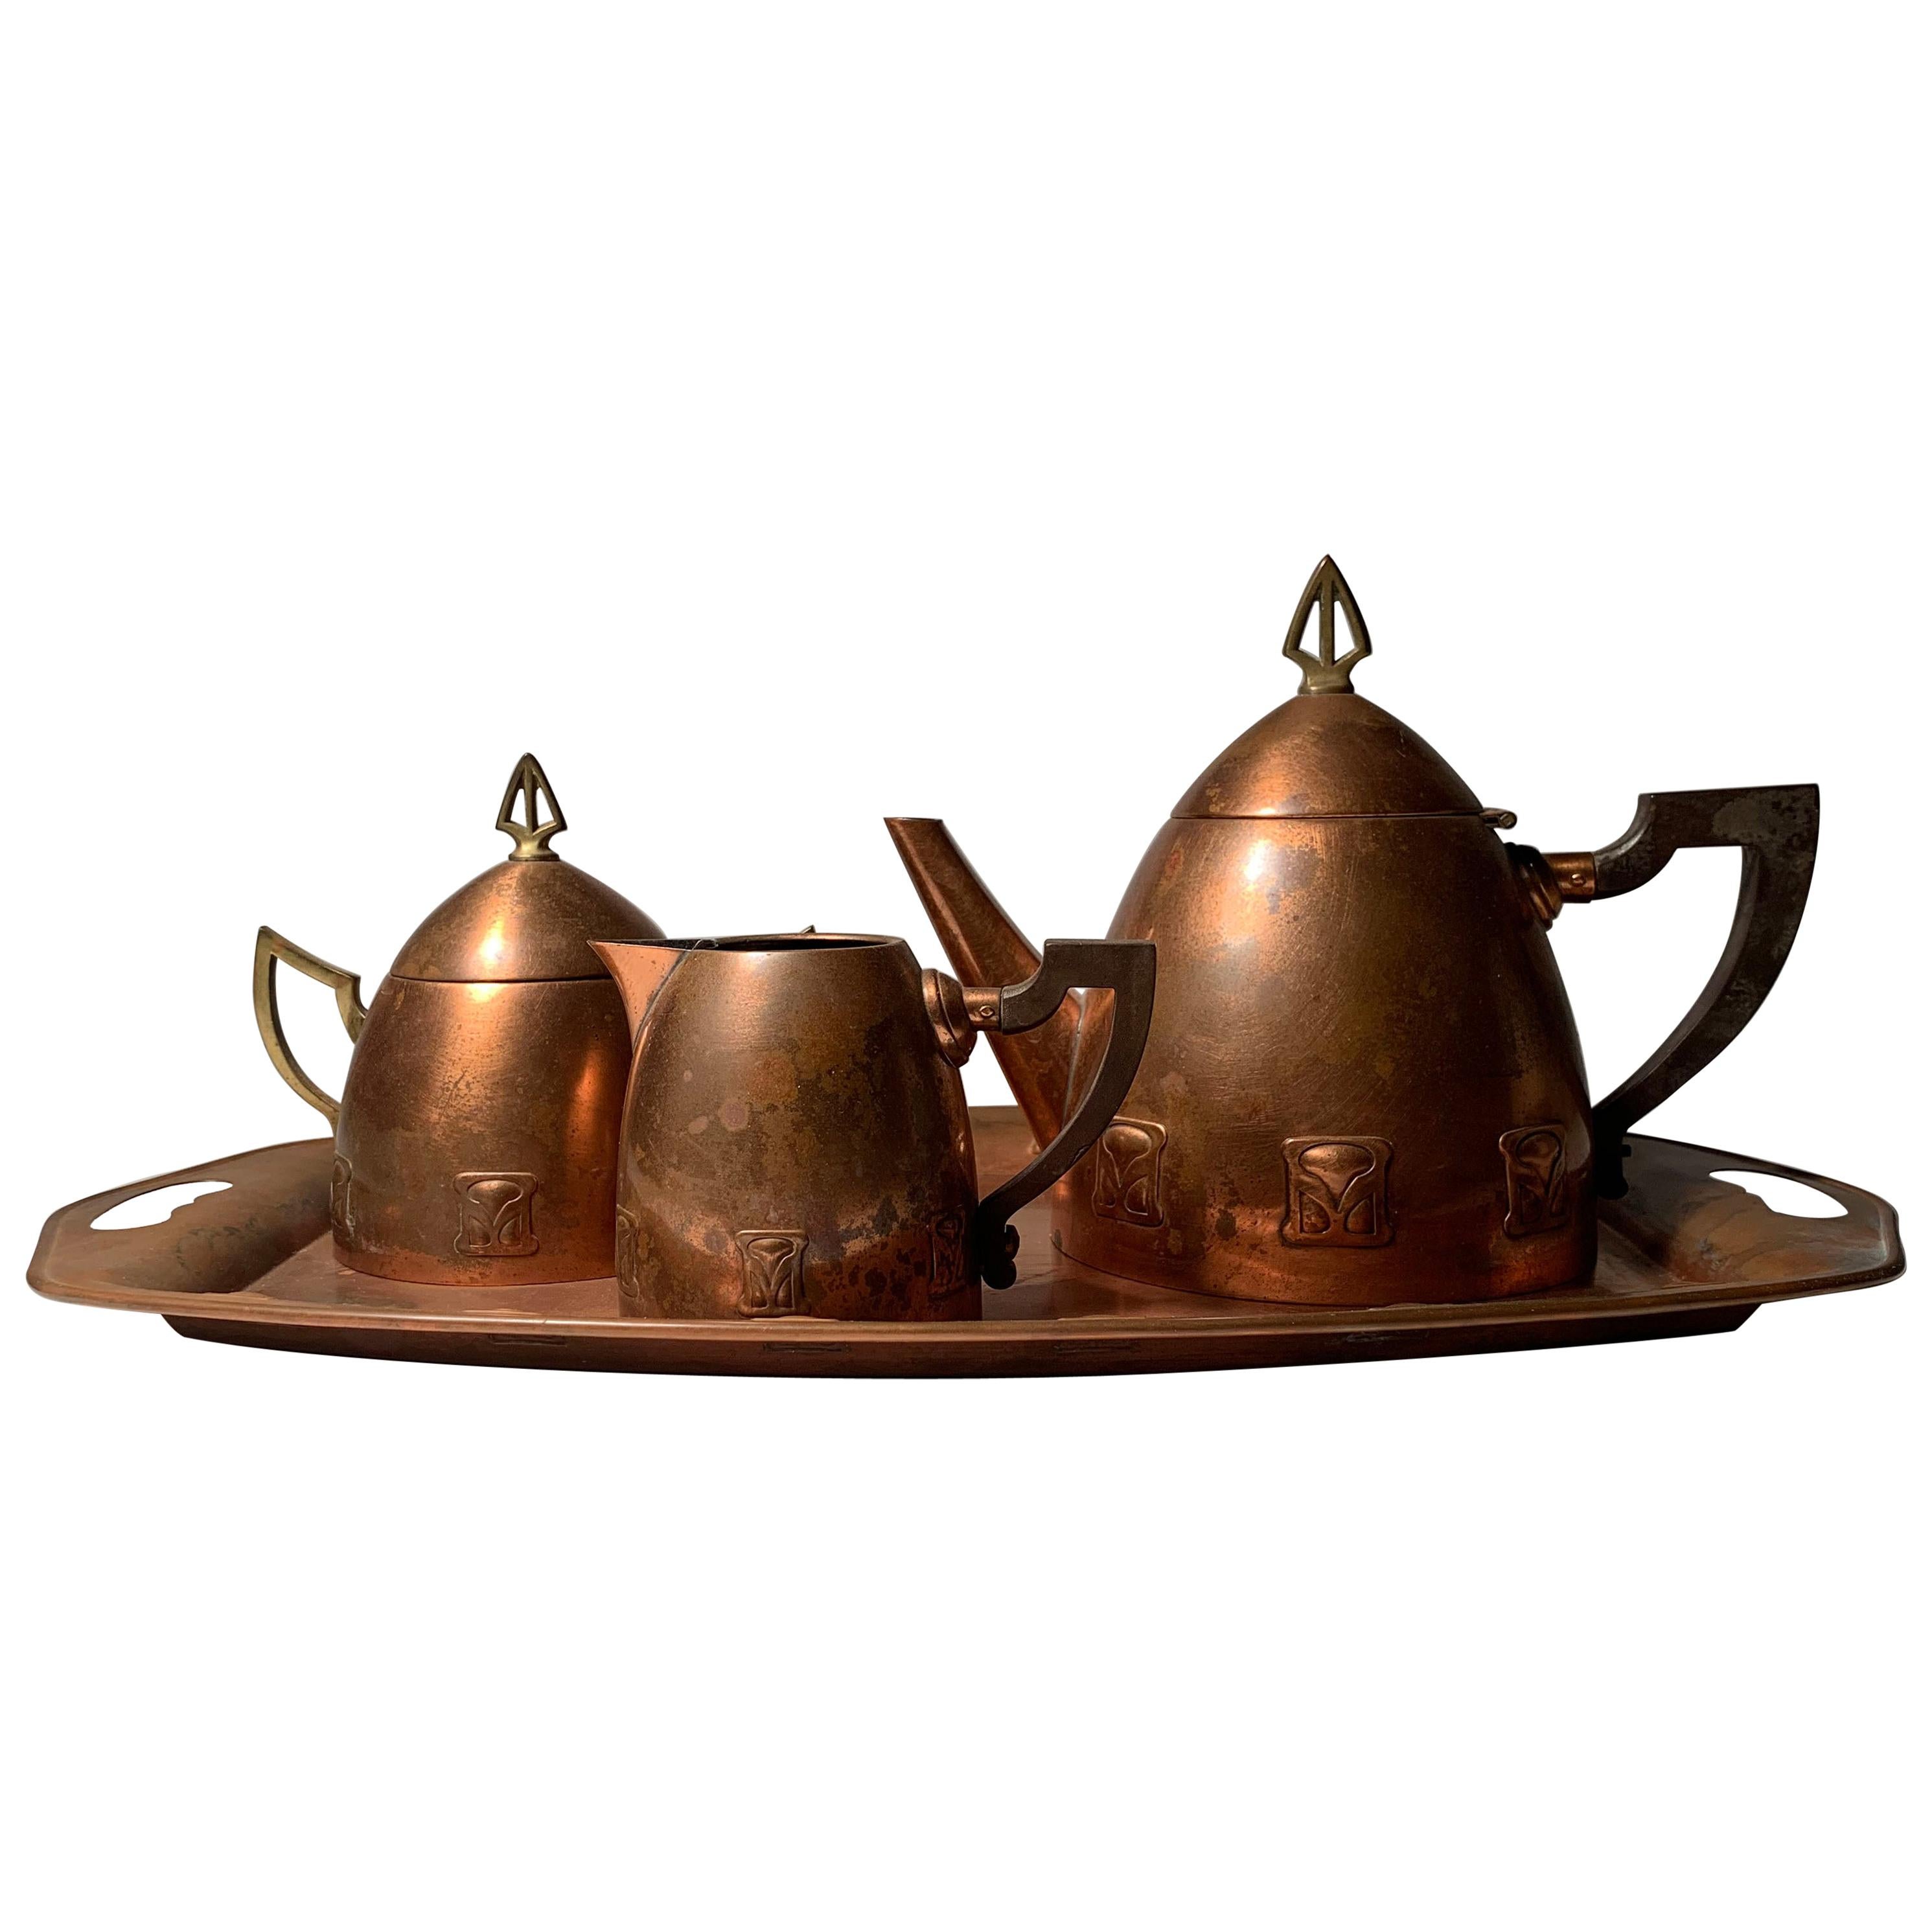 Jugendstil-Teekanne aus Kupfer und Messing des Atelier Mayer für WMF, Deutschland, 1905-1910